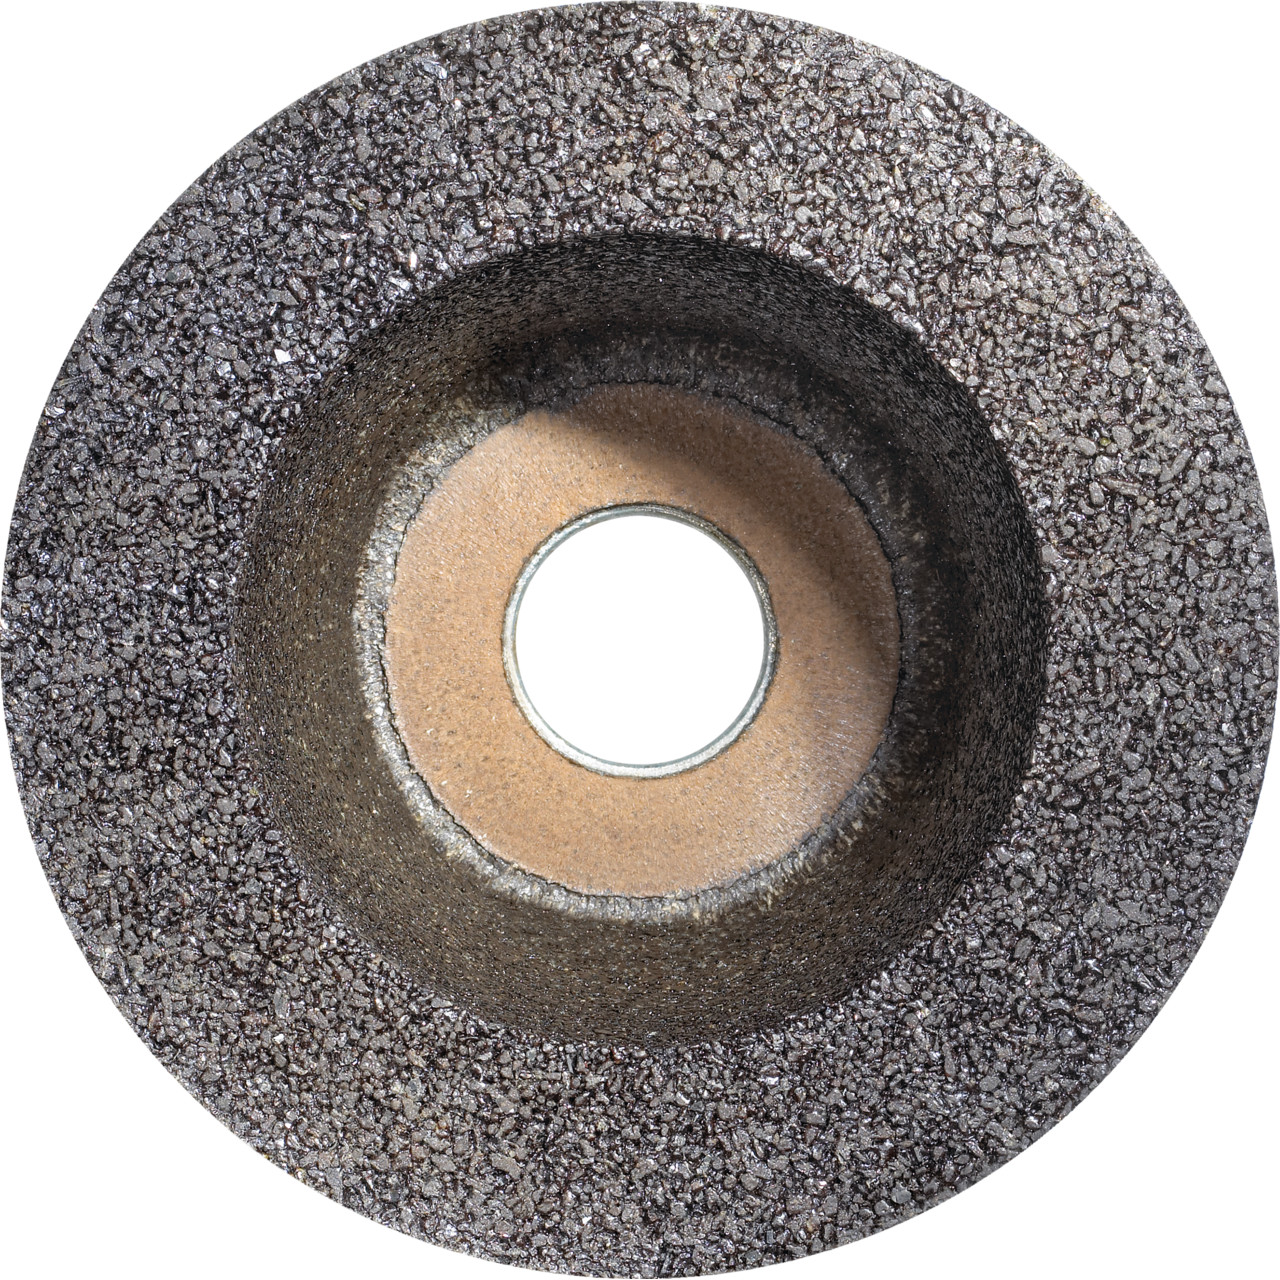 Tyrolit Tazza in resina D/JxTxGE 130/90x55xM14 Per pietra, forma: 11ZB ruota a tazza, Art. 310995